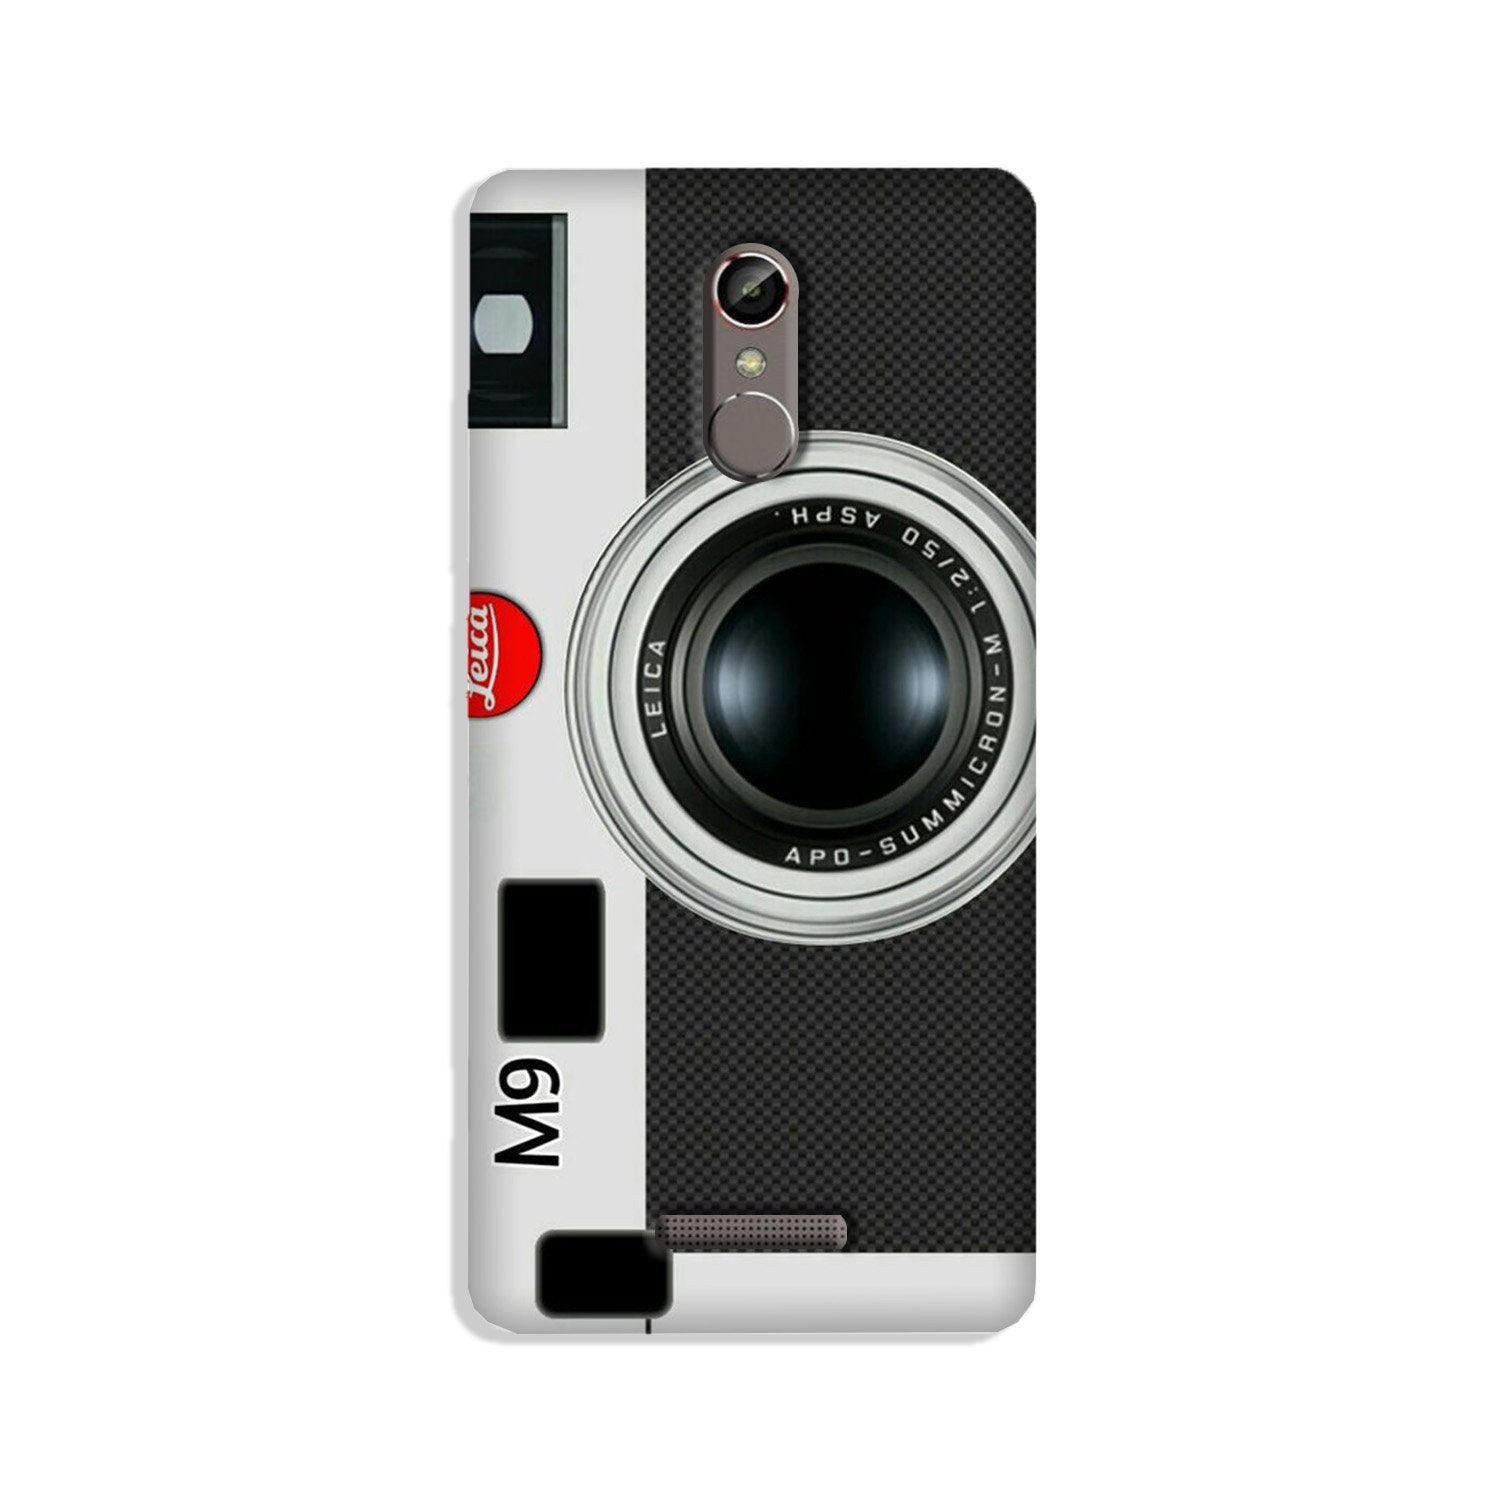 Camera Case for Gionee S6s (Design No. 257)